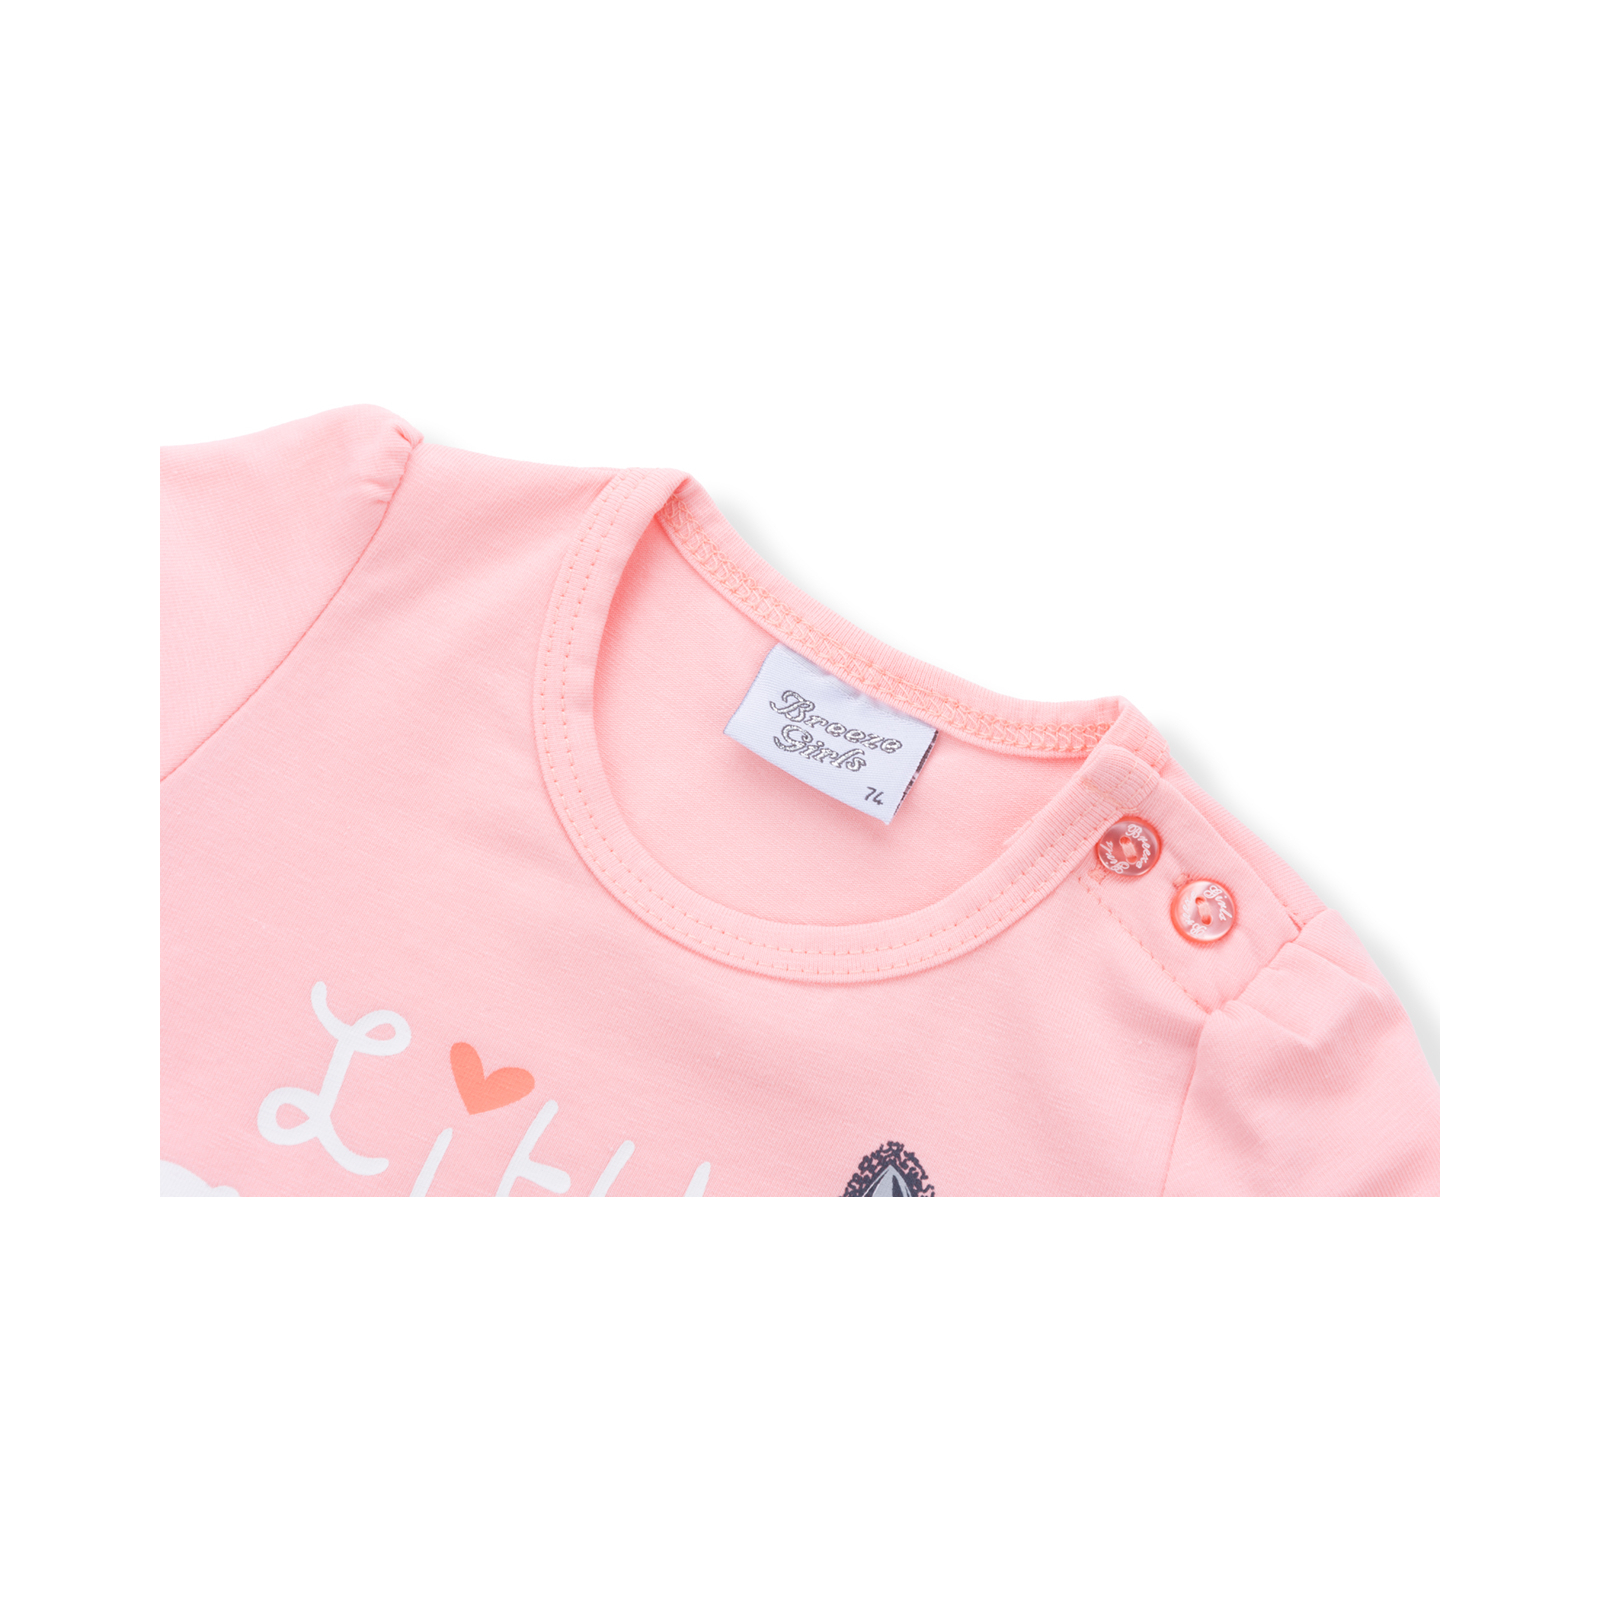 Набор детской одежды Breeze футболка с котиком и штанишки с кармашками (8983-92G-cream) изображение 5